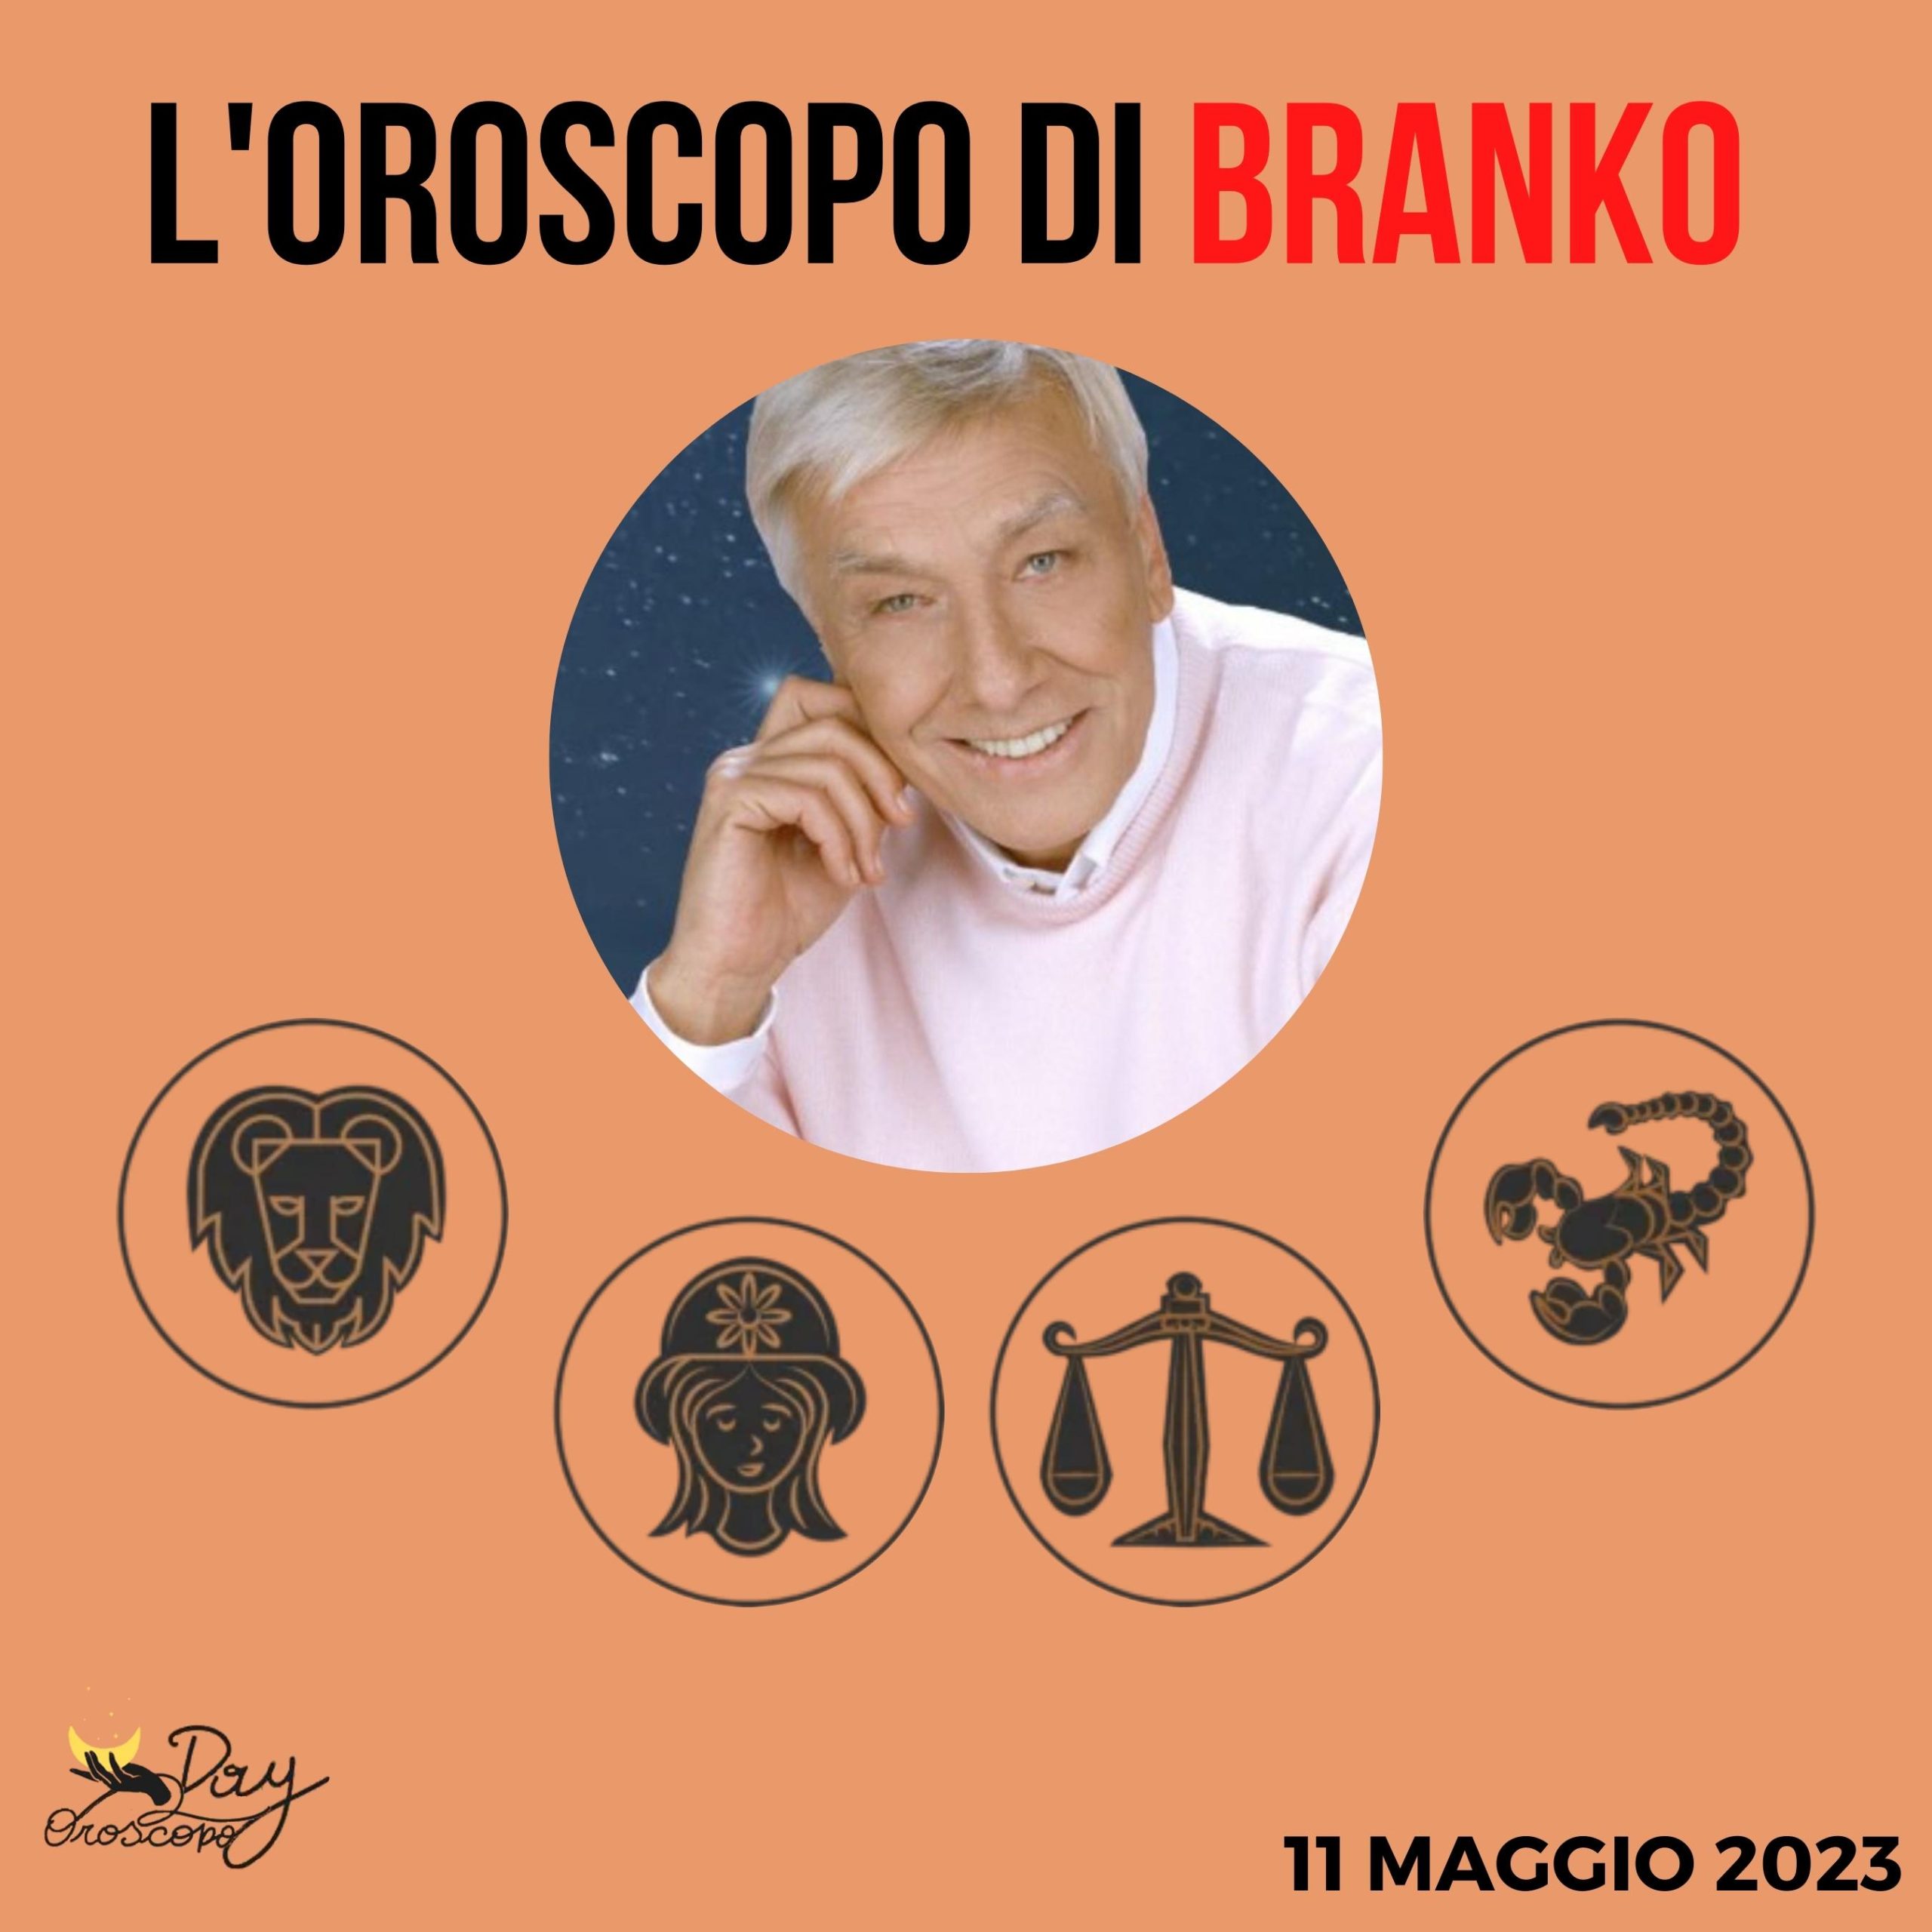 Oroscopo oggi domani Branko 11 maggio Leone Vergine Bilancia Scorpione